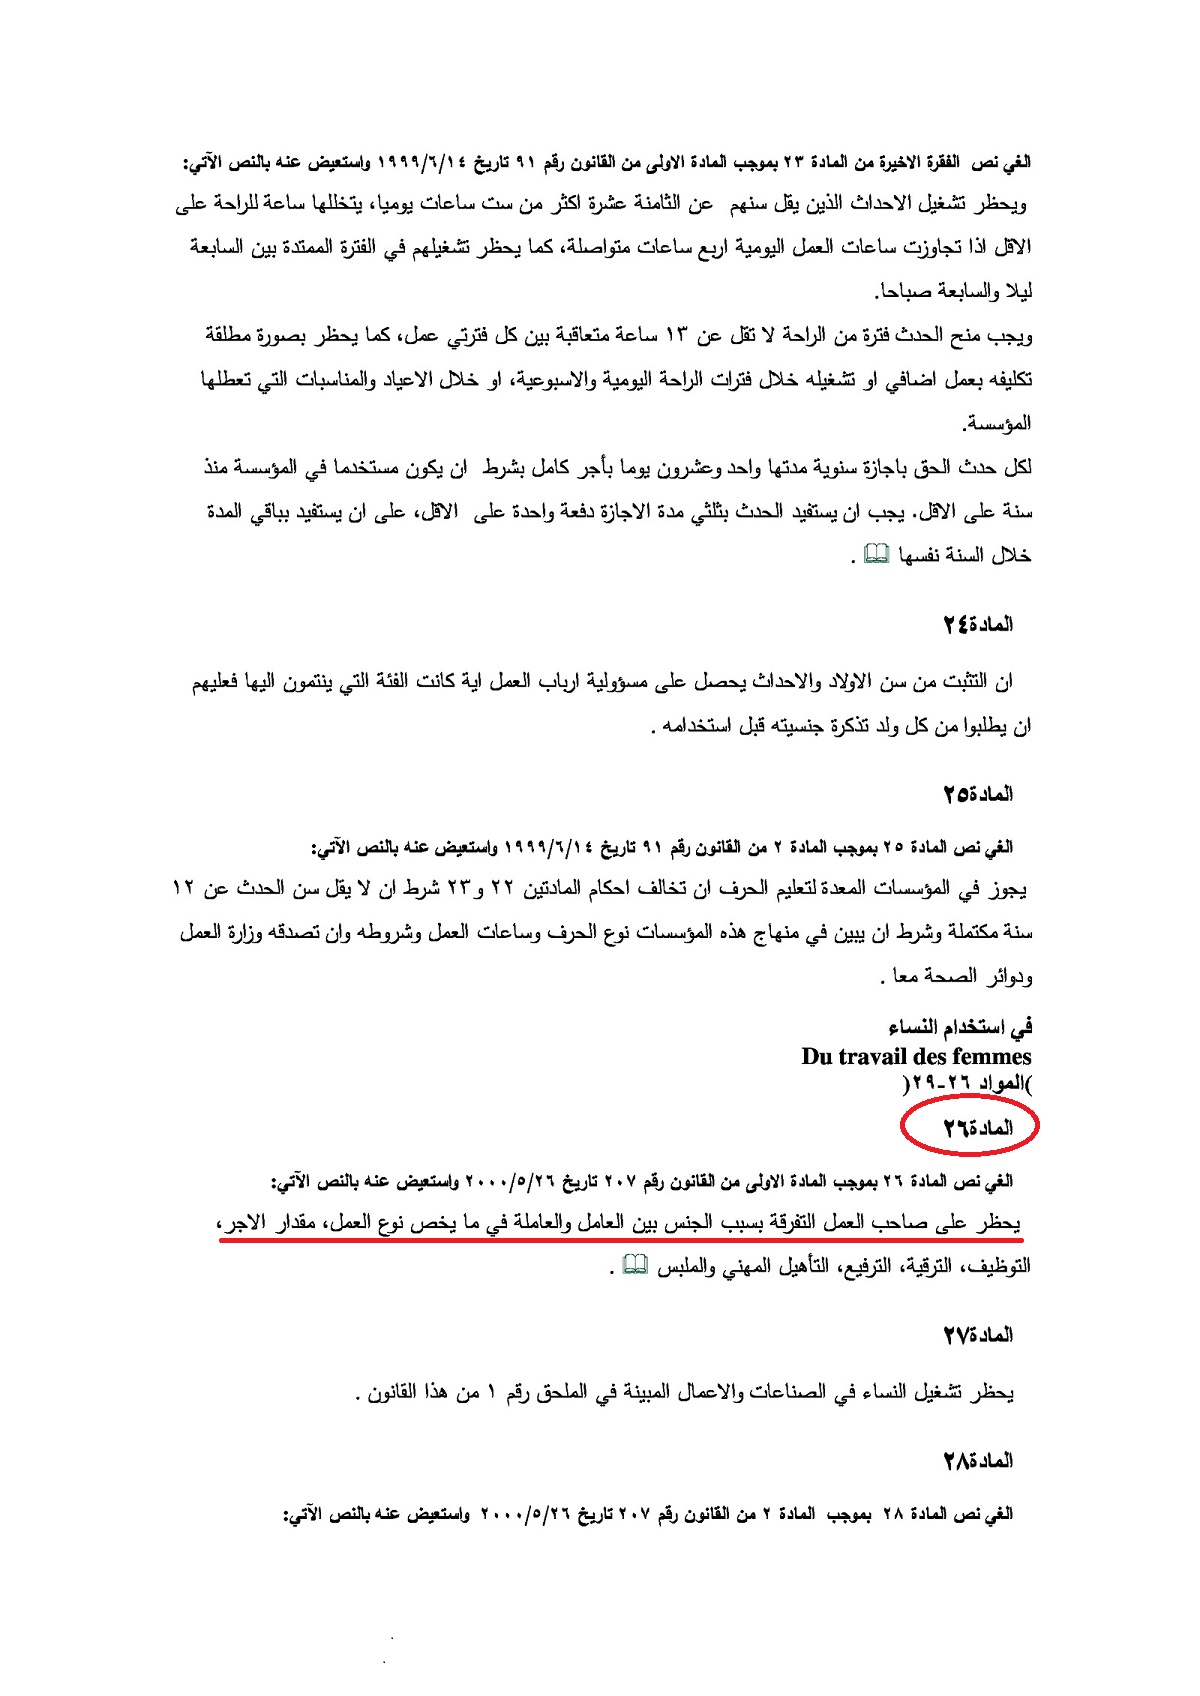 نصّ المادة 26 من الفصل الثاني من قانون العمل اللبناني الذي يكشف مخالفة بلدية الخيام